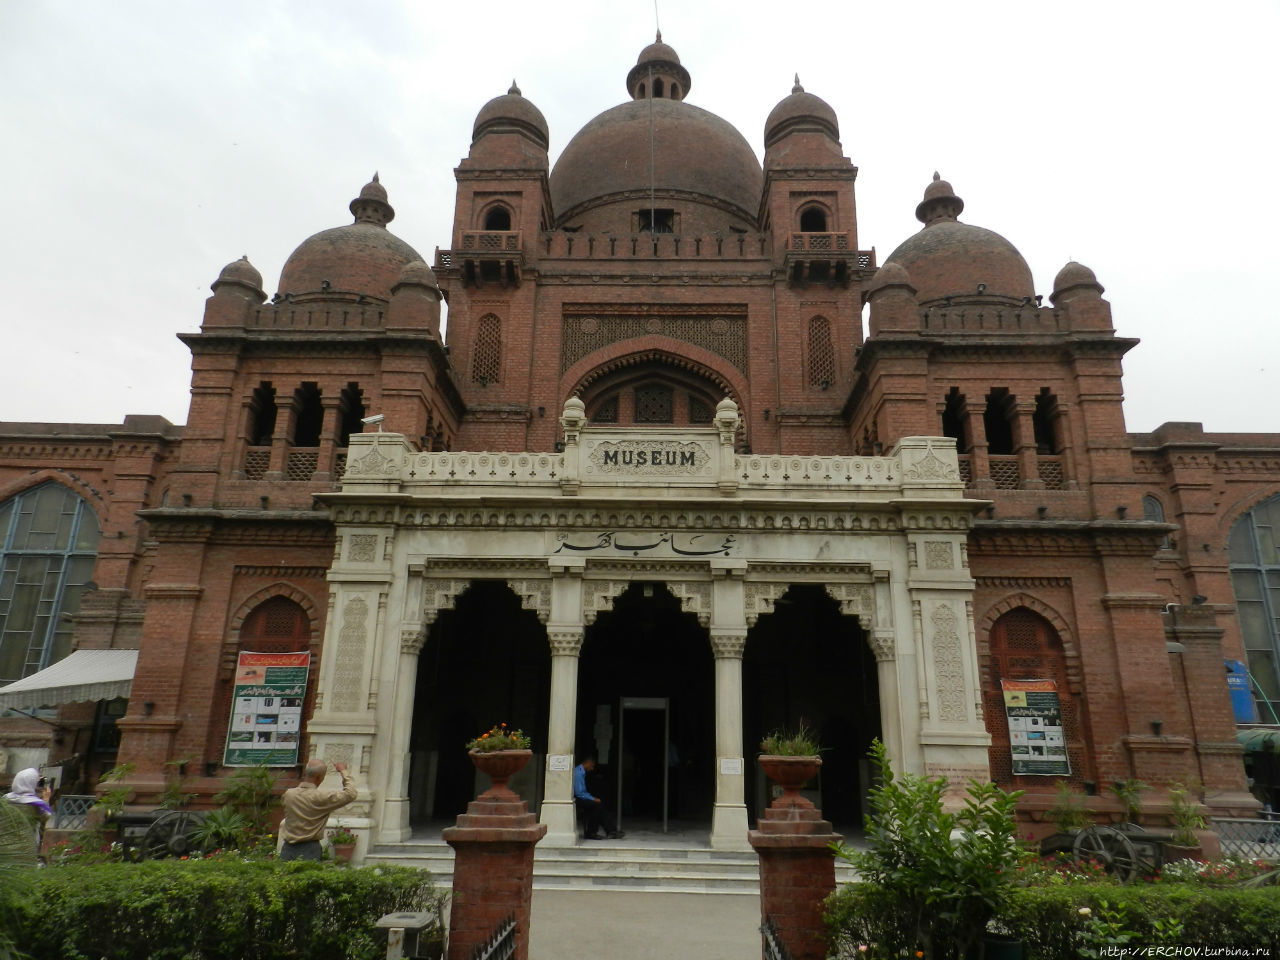 Пакистан. Ч-1. Лахор. Первые впечатления. Исторический музей Лахор, Пакистан